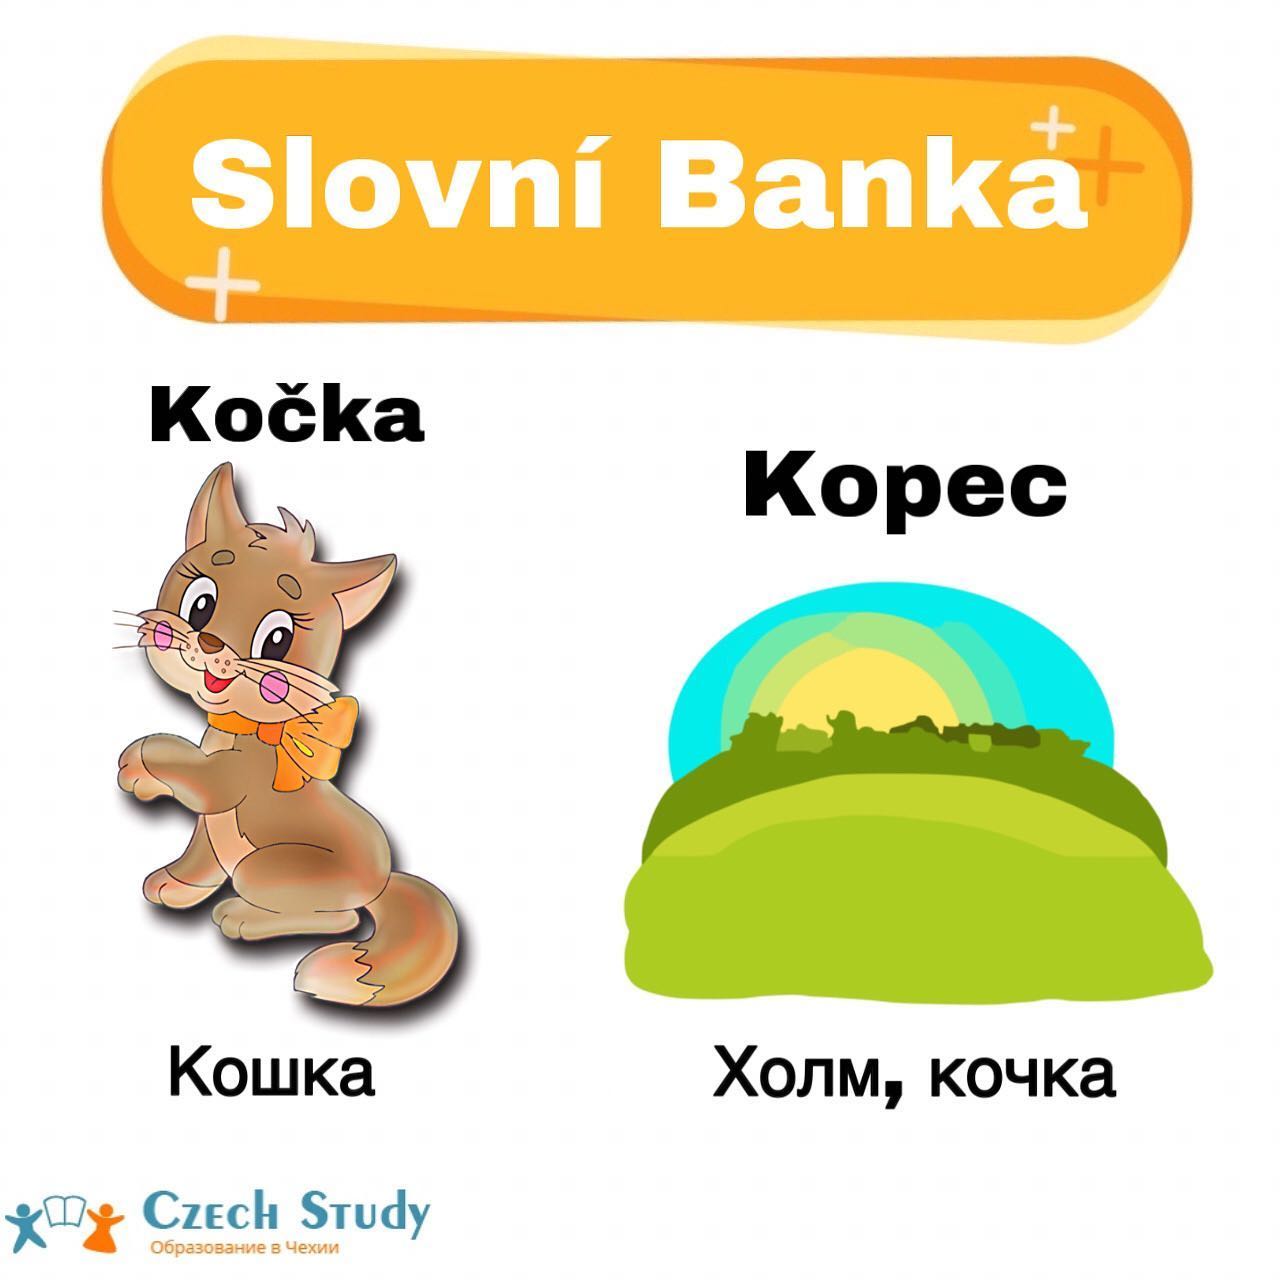 Slovní Banka
⠀
Когда начинаешь учить чешский язык, то, с одной стороны, встречается много слов подобных русским словам, с другой стороны, в чешском языке есть немало слов, которые вызывают смех или улыбку у русского человека. А иногда из-за неправильного понимания чешских слов люди попадают в комические или нелепые ситуации️
⠀
Вот некоторые из них 🏻
⠀
Ovoce-[Овоцэ]-фрукты;
Zelenina-[Зэлэнина]-овощи;
⠀
Kočka-[Кочка]-кошка;
Kopeс, kopeček-[Копэц, копэчек]-холм, горка;
⠀
Frajer-[Фрайэр]-молодец;
Zločinec-[Злочинец]-фраер, преступник;
⠀
Pozor-[Позор]-внимание;
Hanba-[Ганба]-позор;
⠀
Stůl-[Стул]-стол;
Židle-[Жидле]-стул;
⠀
Okurky-[Окурки]-огурцы;
Nedopalky-[Недопалки]-окурки;
⠀
Puk-[Пук]-шайба;
Pšoukat-[Пшоукат]-пук;
⠀
Houby-[Гоубы]-грибы;
Rty-[Рты]-губы.
⠀
Вот такие парой смешные слова в переводе️Ставьте ️ и сохраняйте себе 
А в комментариях пишите, какие слова чешского языка удивили вас🤗